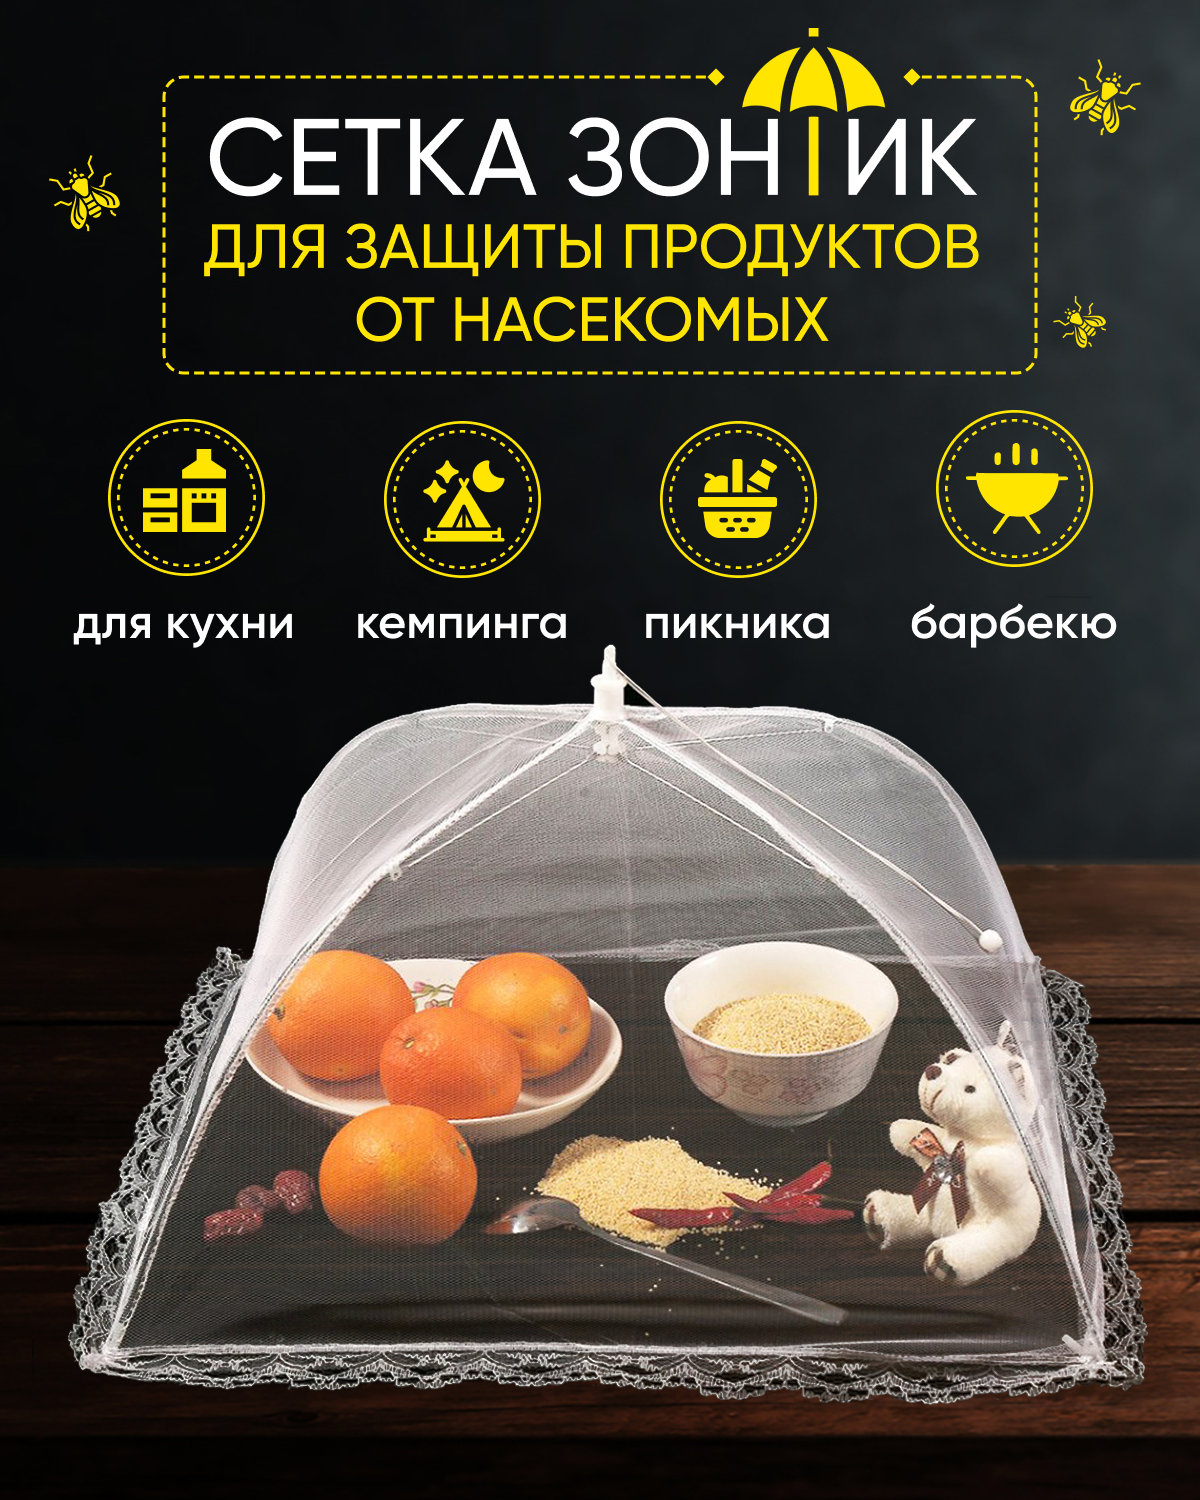 Раскладная сетка зонтик F-MAX для защиты продуктов и еды от насекомых 48 х 48 см белая